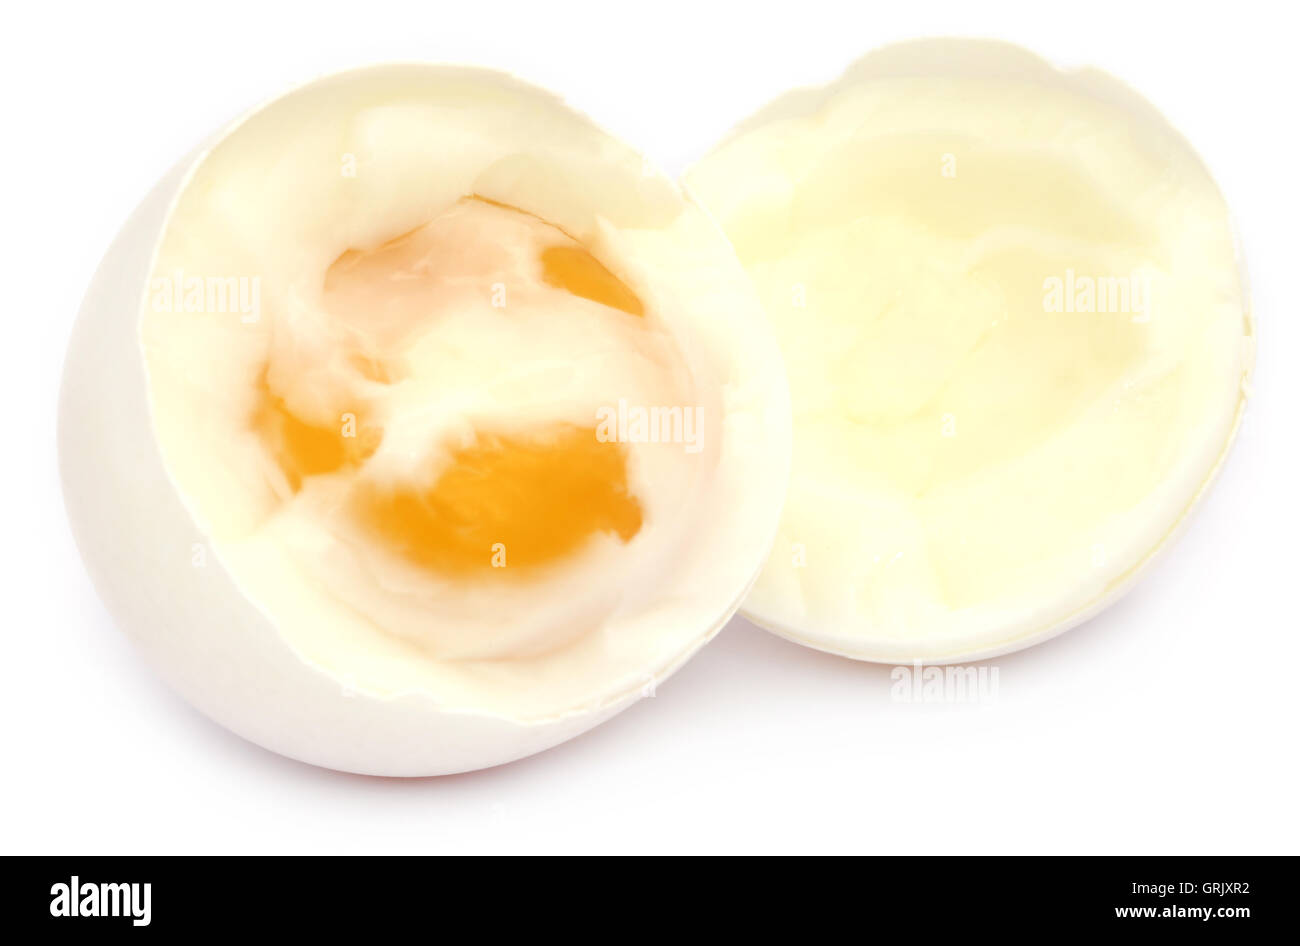 Broken boiled egg over white background Stock Photo